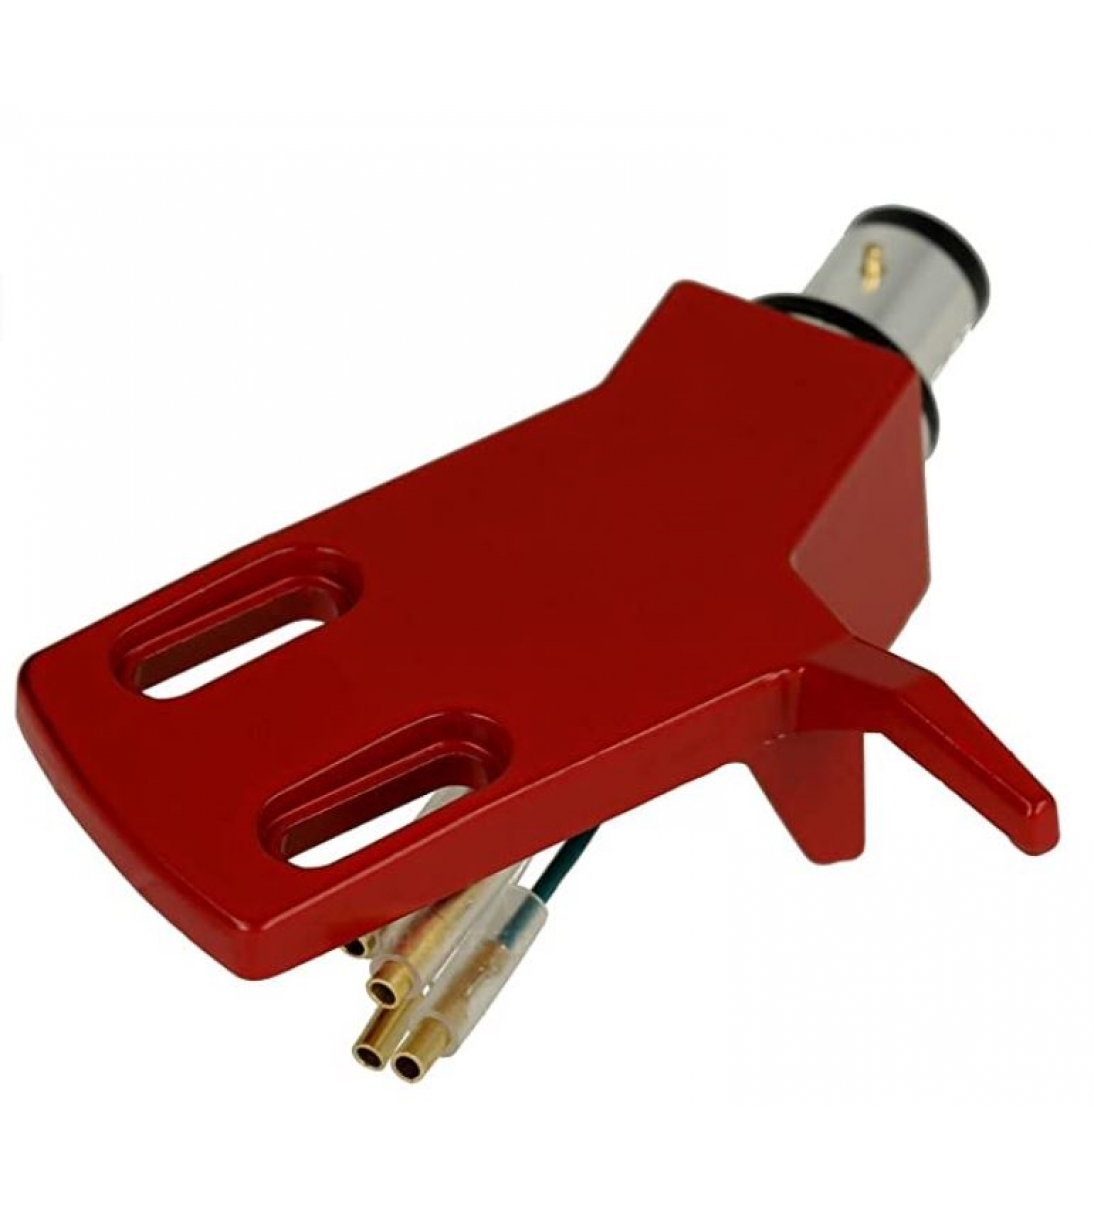 CHS-13 - Portatestina angolato in alluminio leggero - Rosso | Connettore SME | per bracci diritti | incl. cavo portatestina